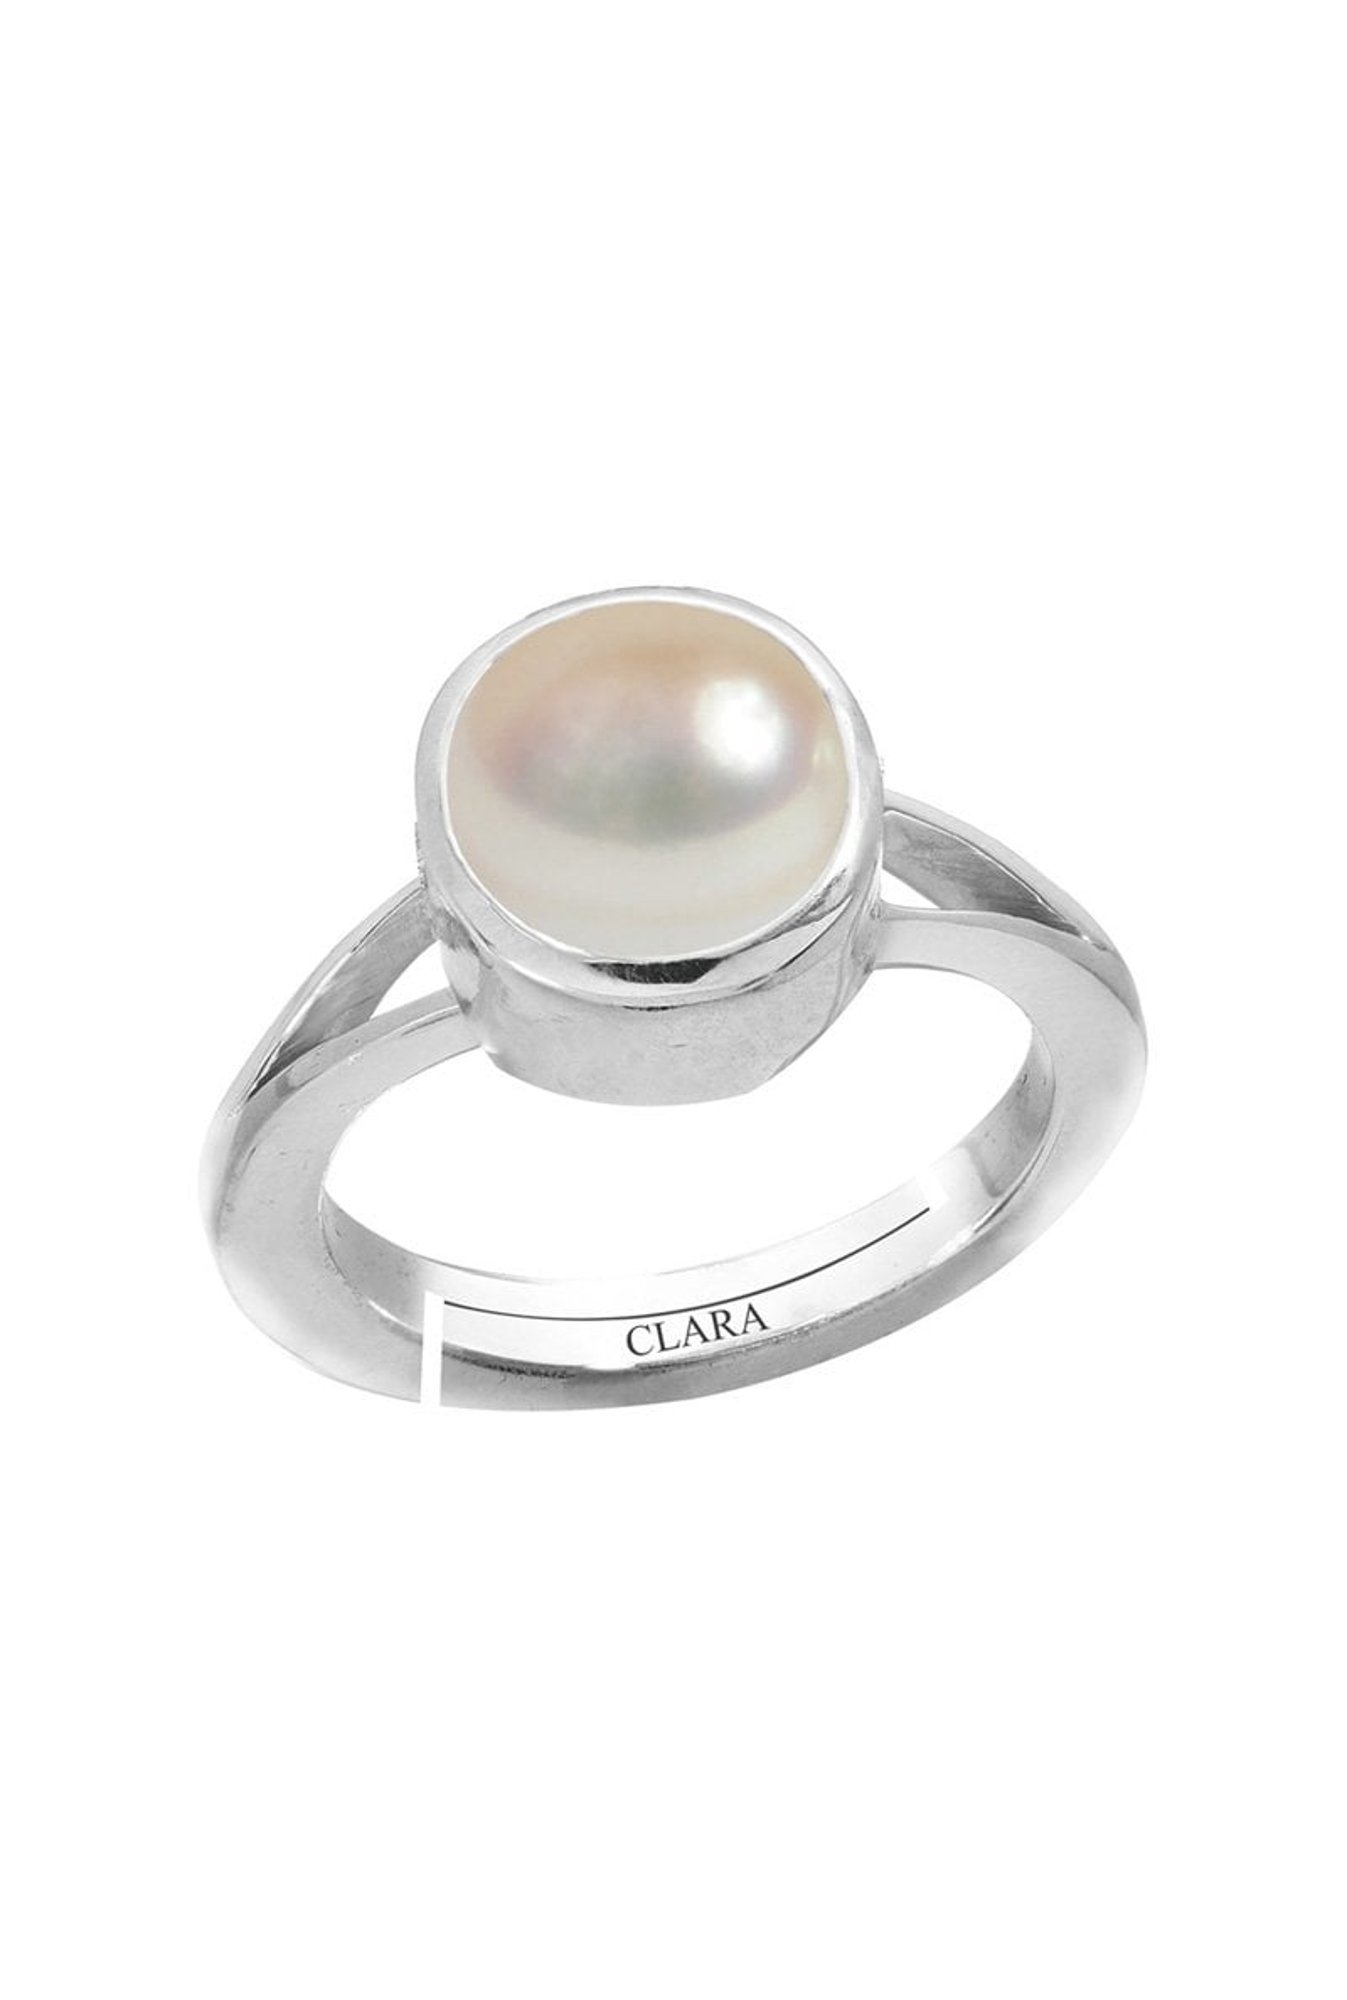 Buy White Pearl Stones (Moti), Benefits, Price | RudraGram